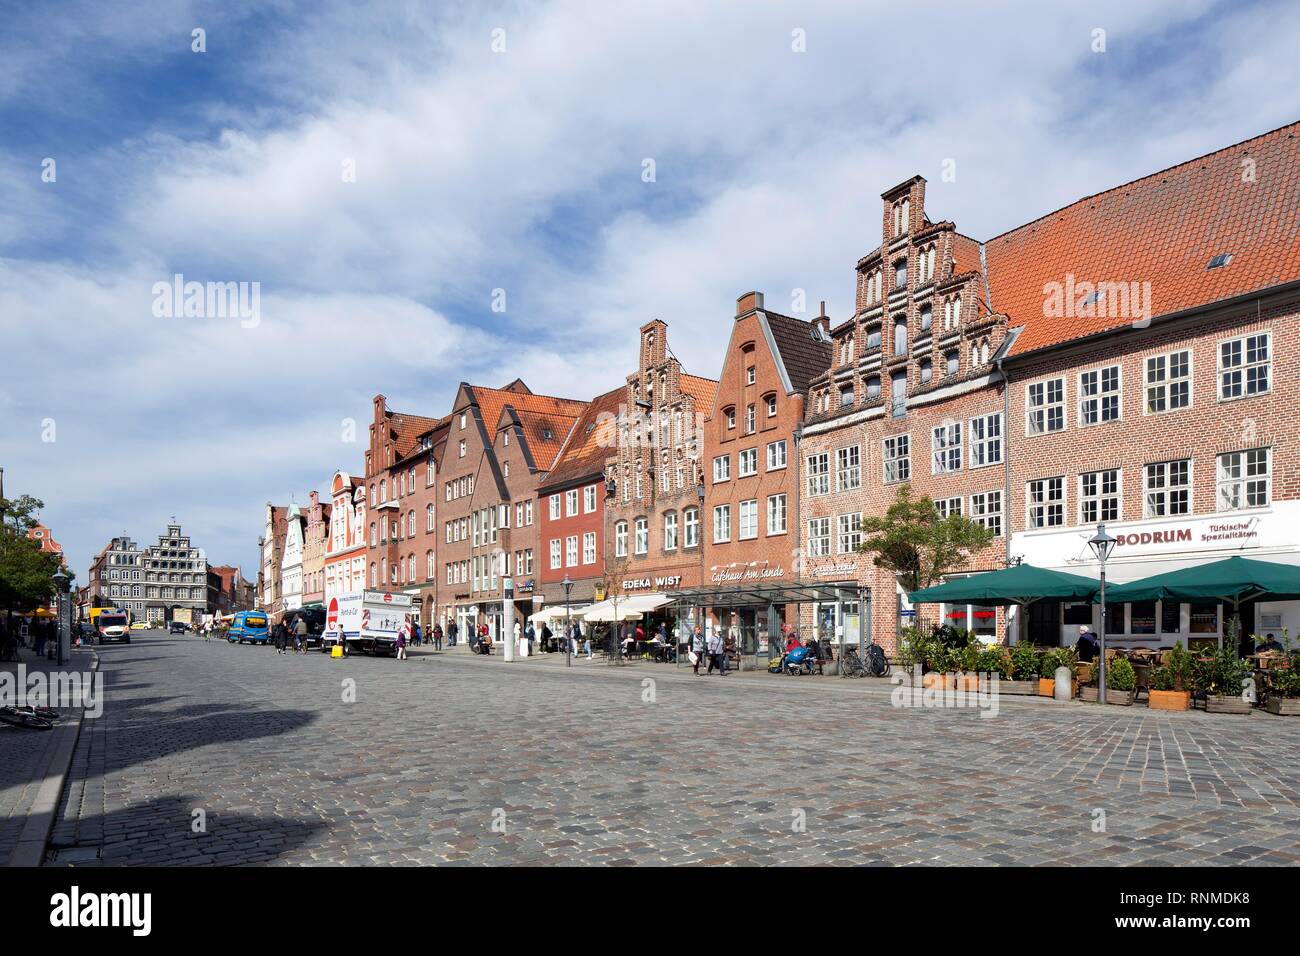 Città storica di case e case di mercanti sulla piazza Am Sande, Tedesco del Nord case a capanna, città vecchia, Lüneburg Foto Stock